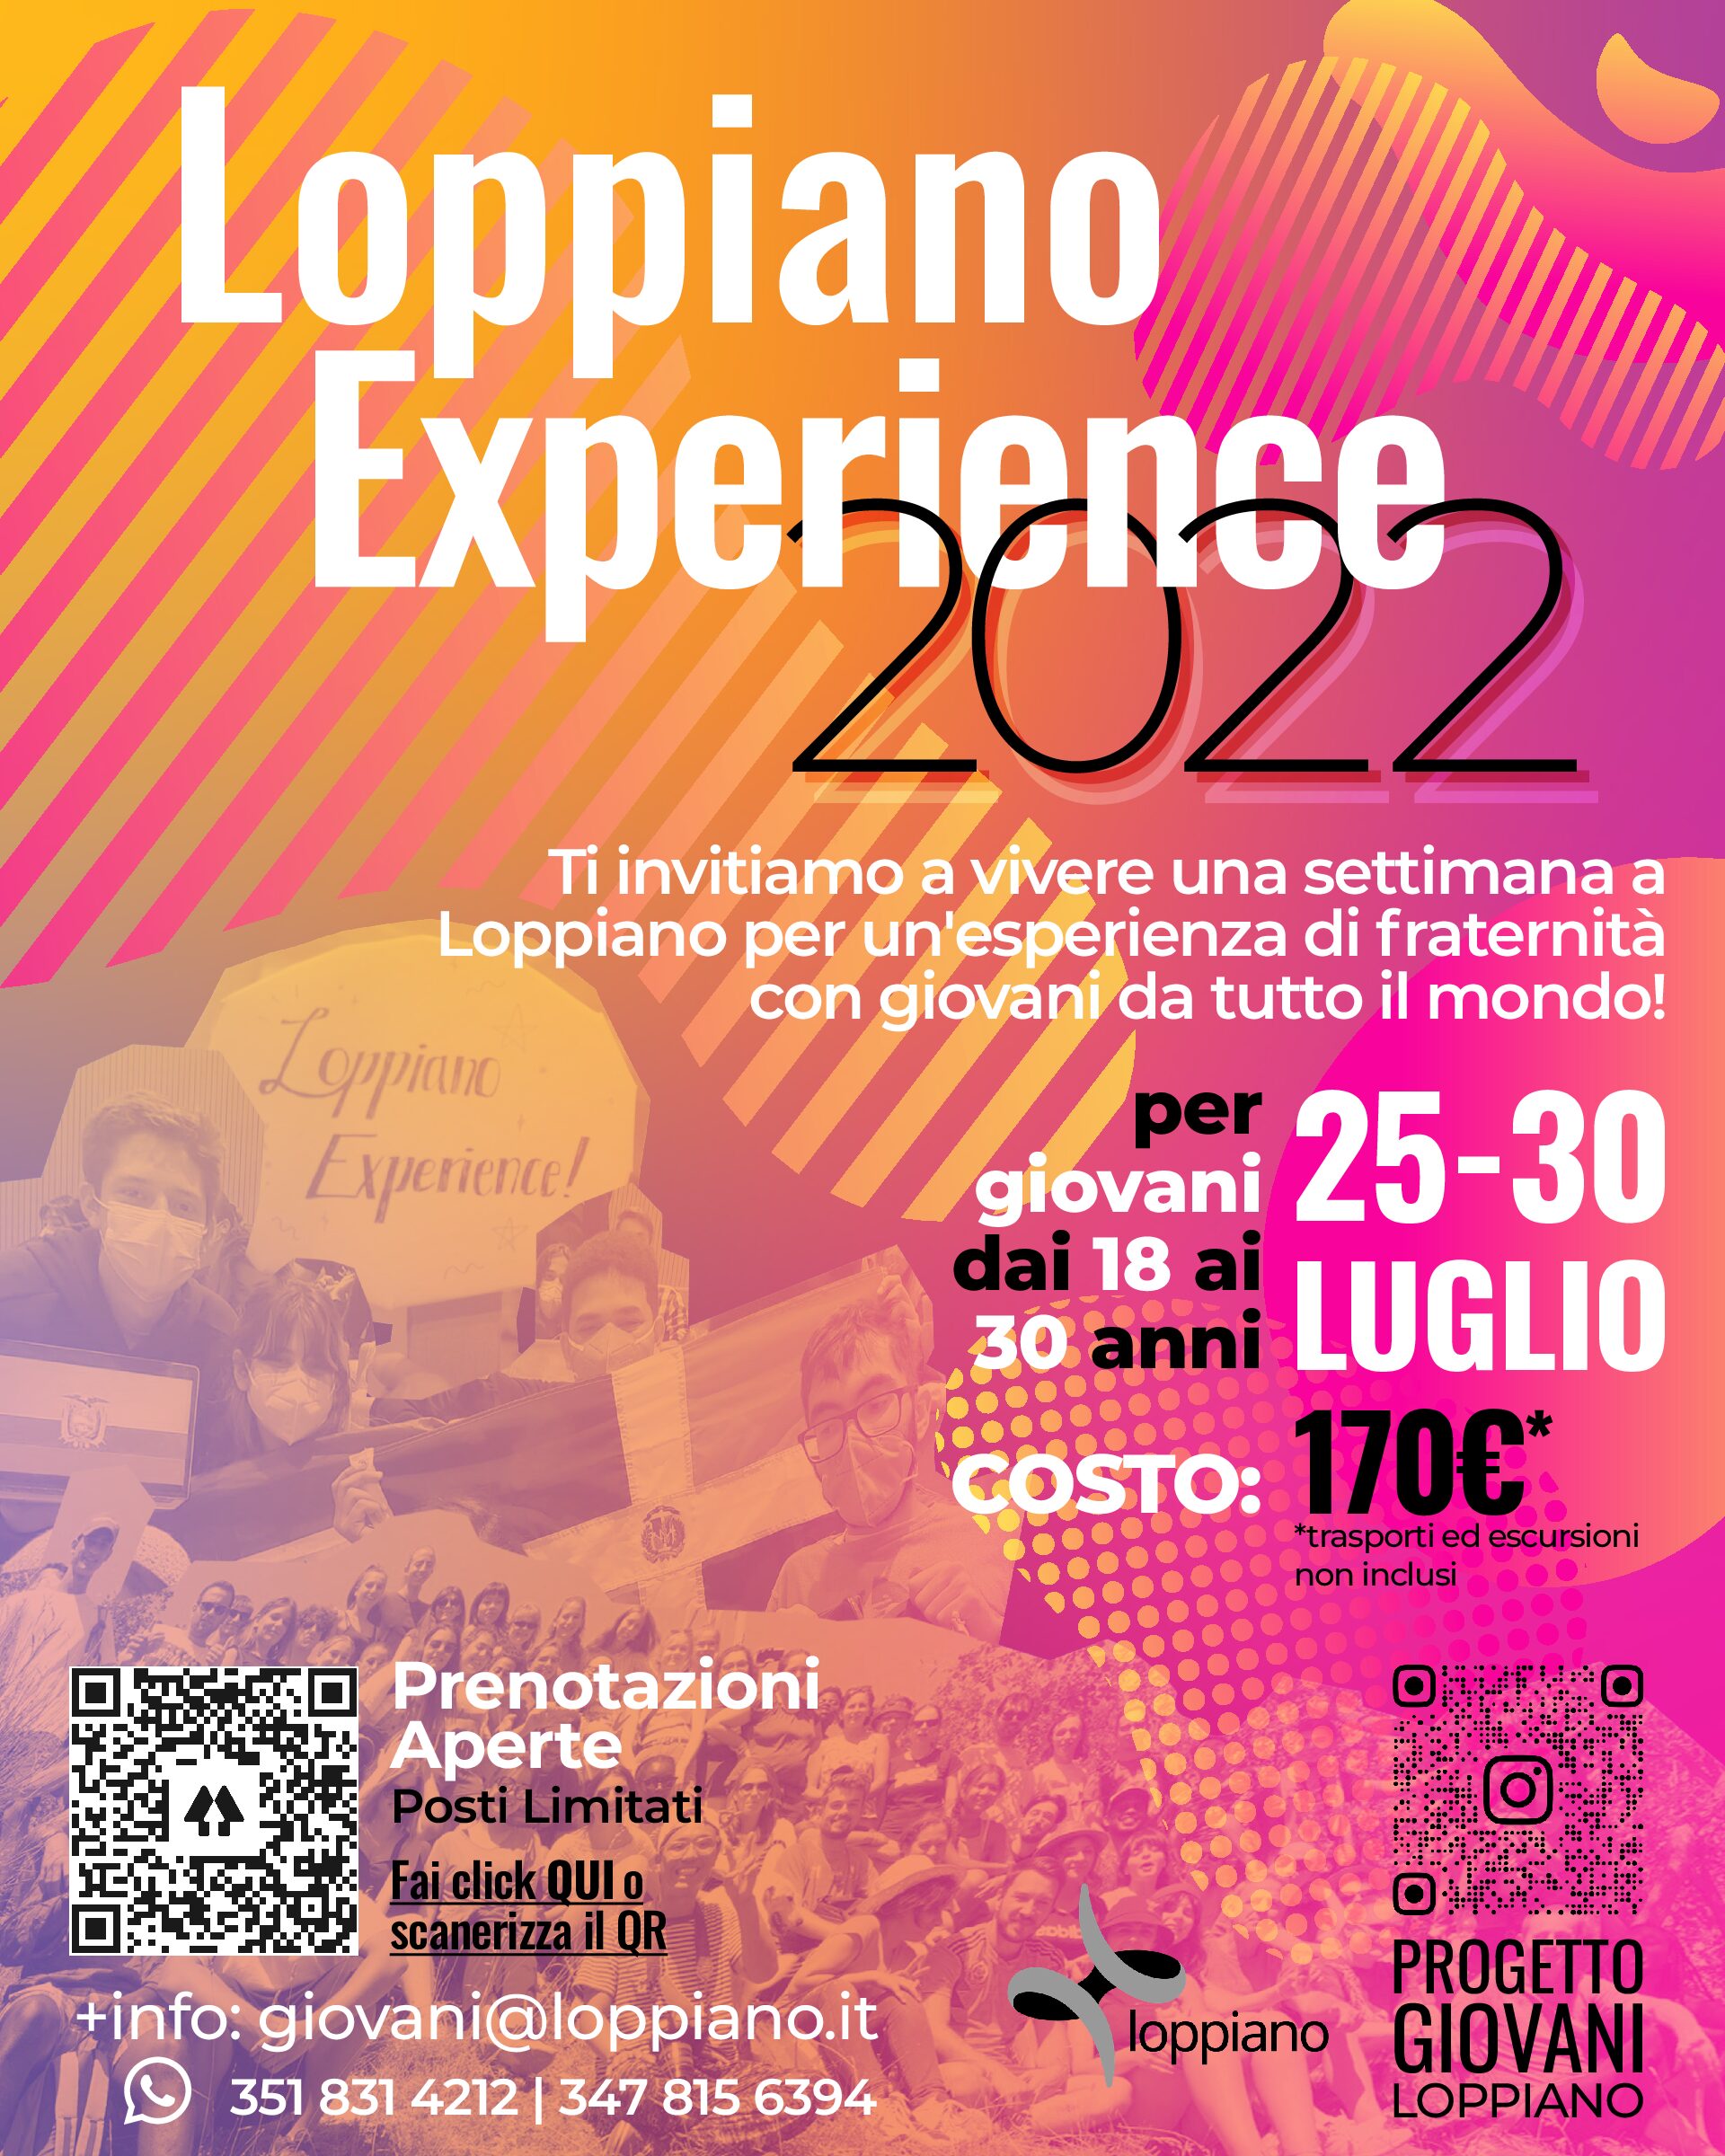 Een week om het Loppiano-jongerenproject te beleven